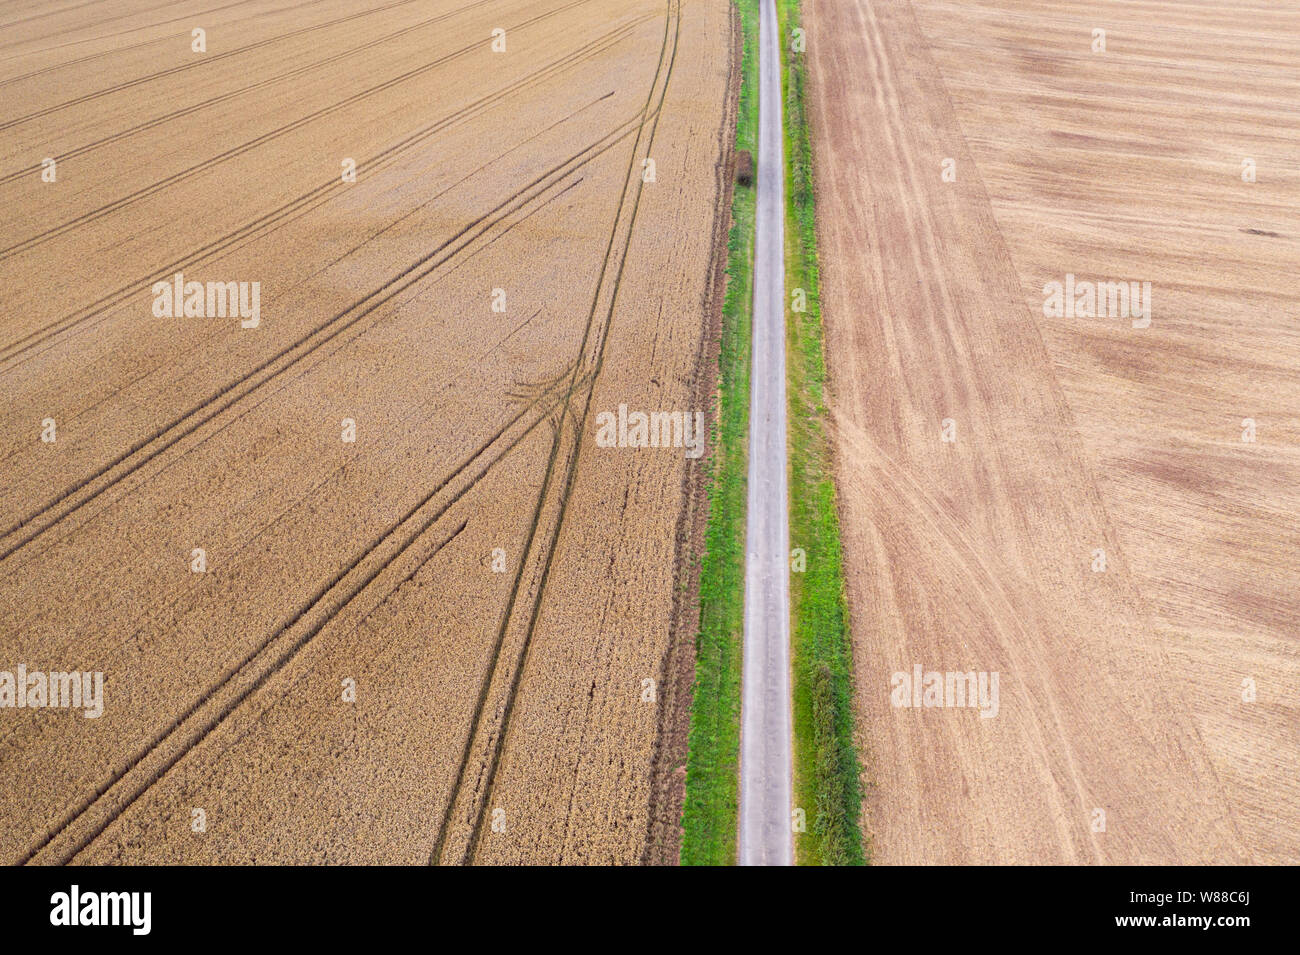 Antenne drone Blick über frisch geernteten Raps- und Rübsensamen und Reif oat Feld geteilt durch die ländliche Landschaft Straße in Shropshire, Großbritannien Stockfoto